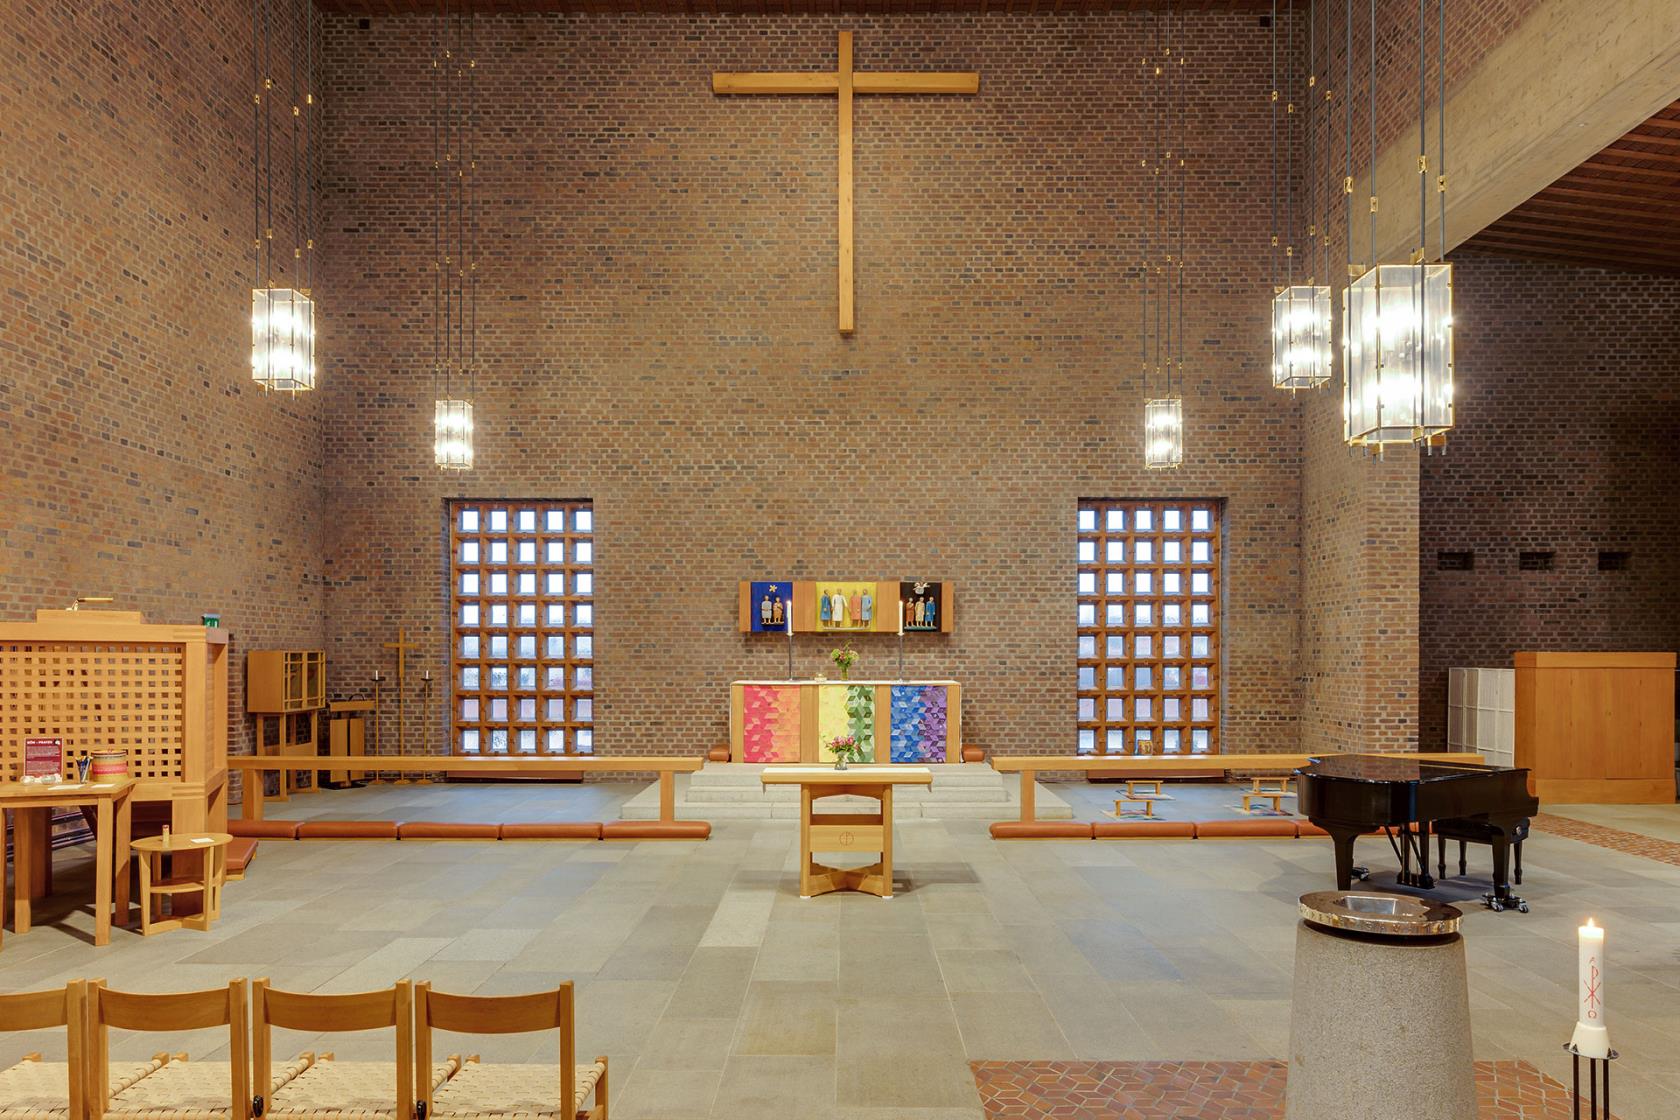 Koret med altaret i mitten omgärdat av två stora fönster och ett t-format kors längst uppe vid taket.